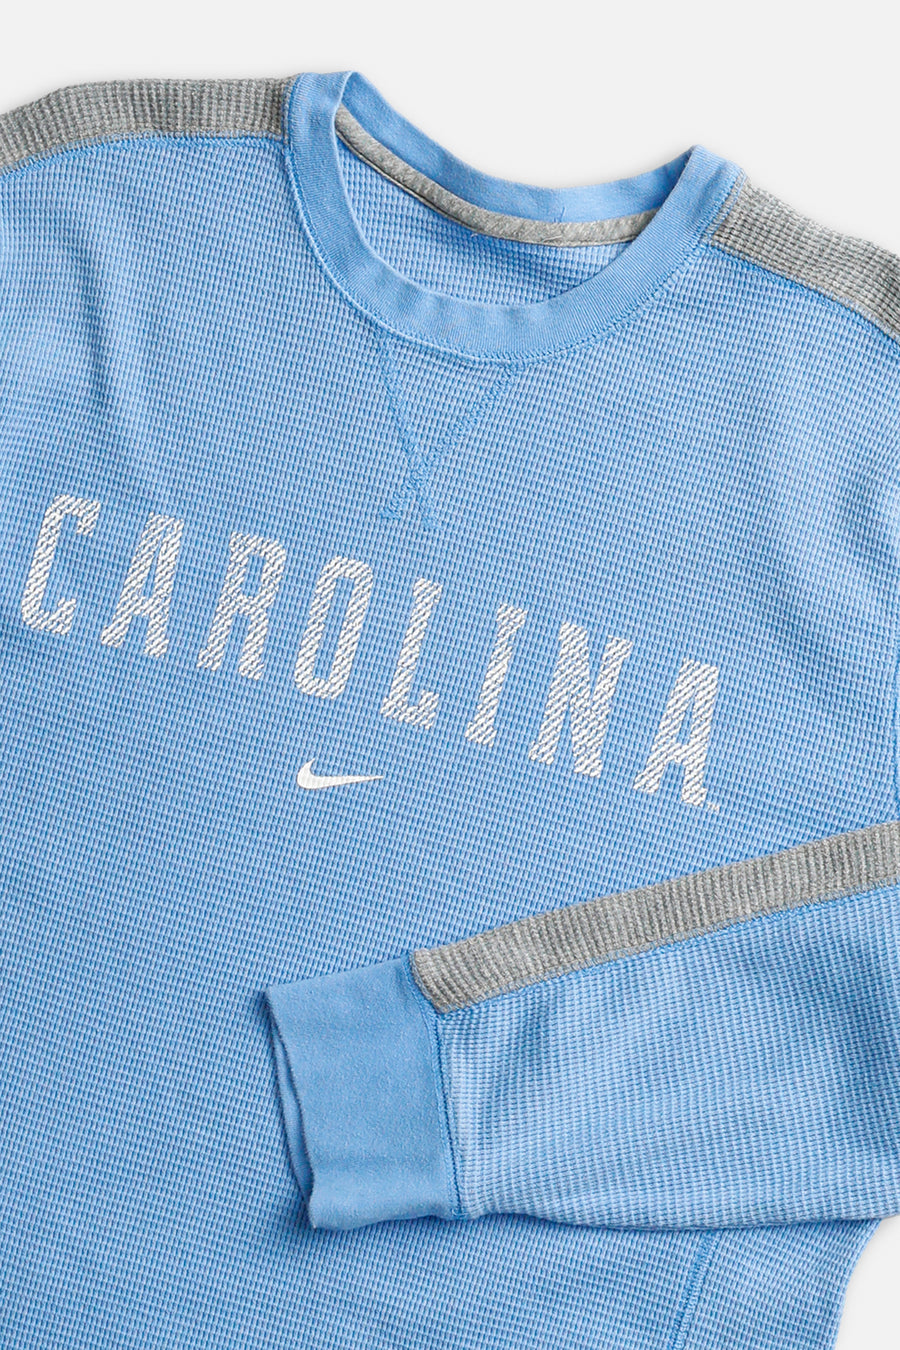 Vintage Nike Carolina Long Sleeve Tee - M